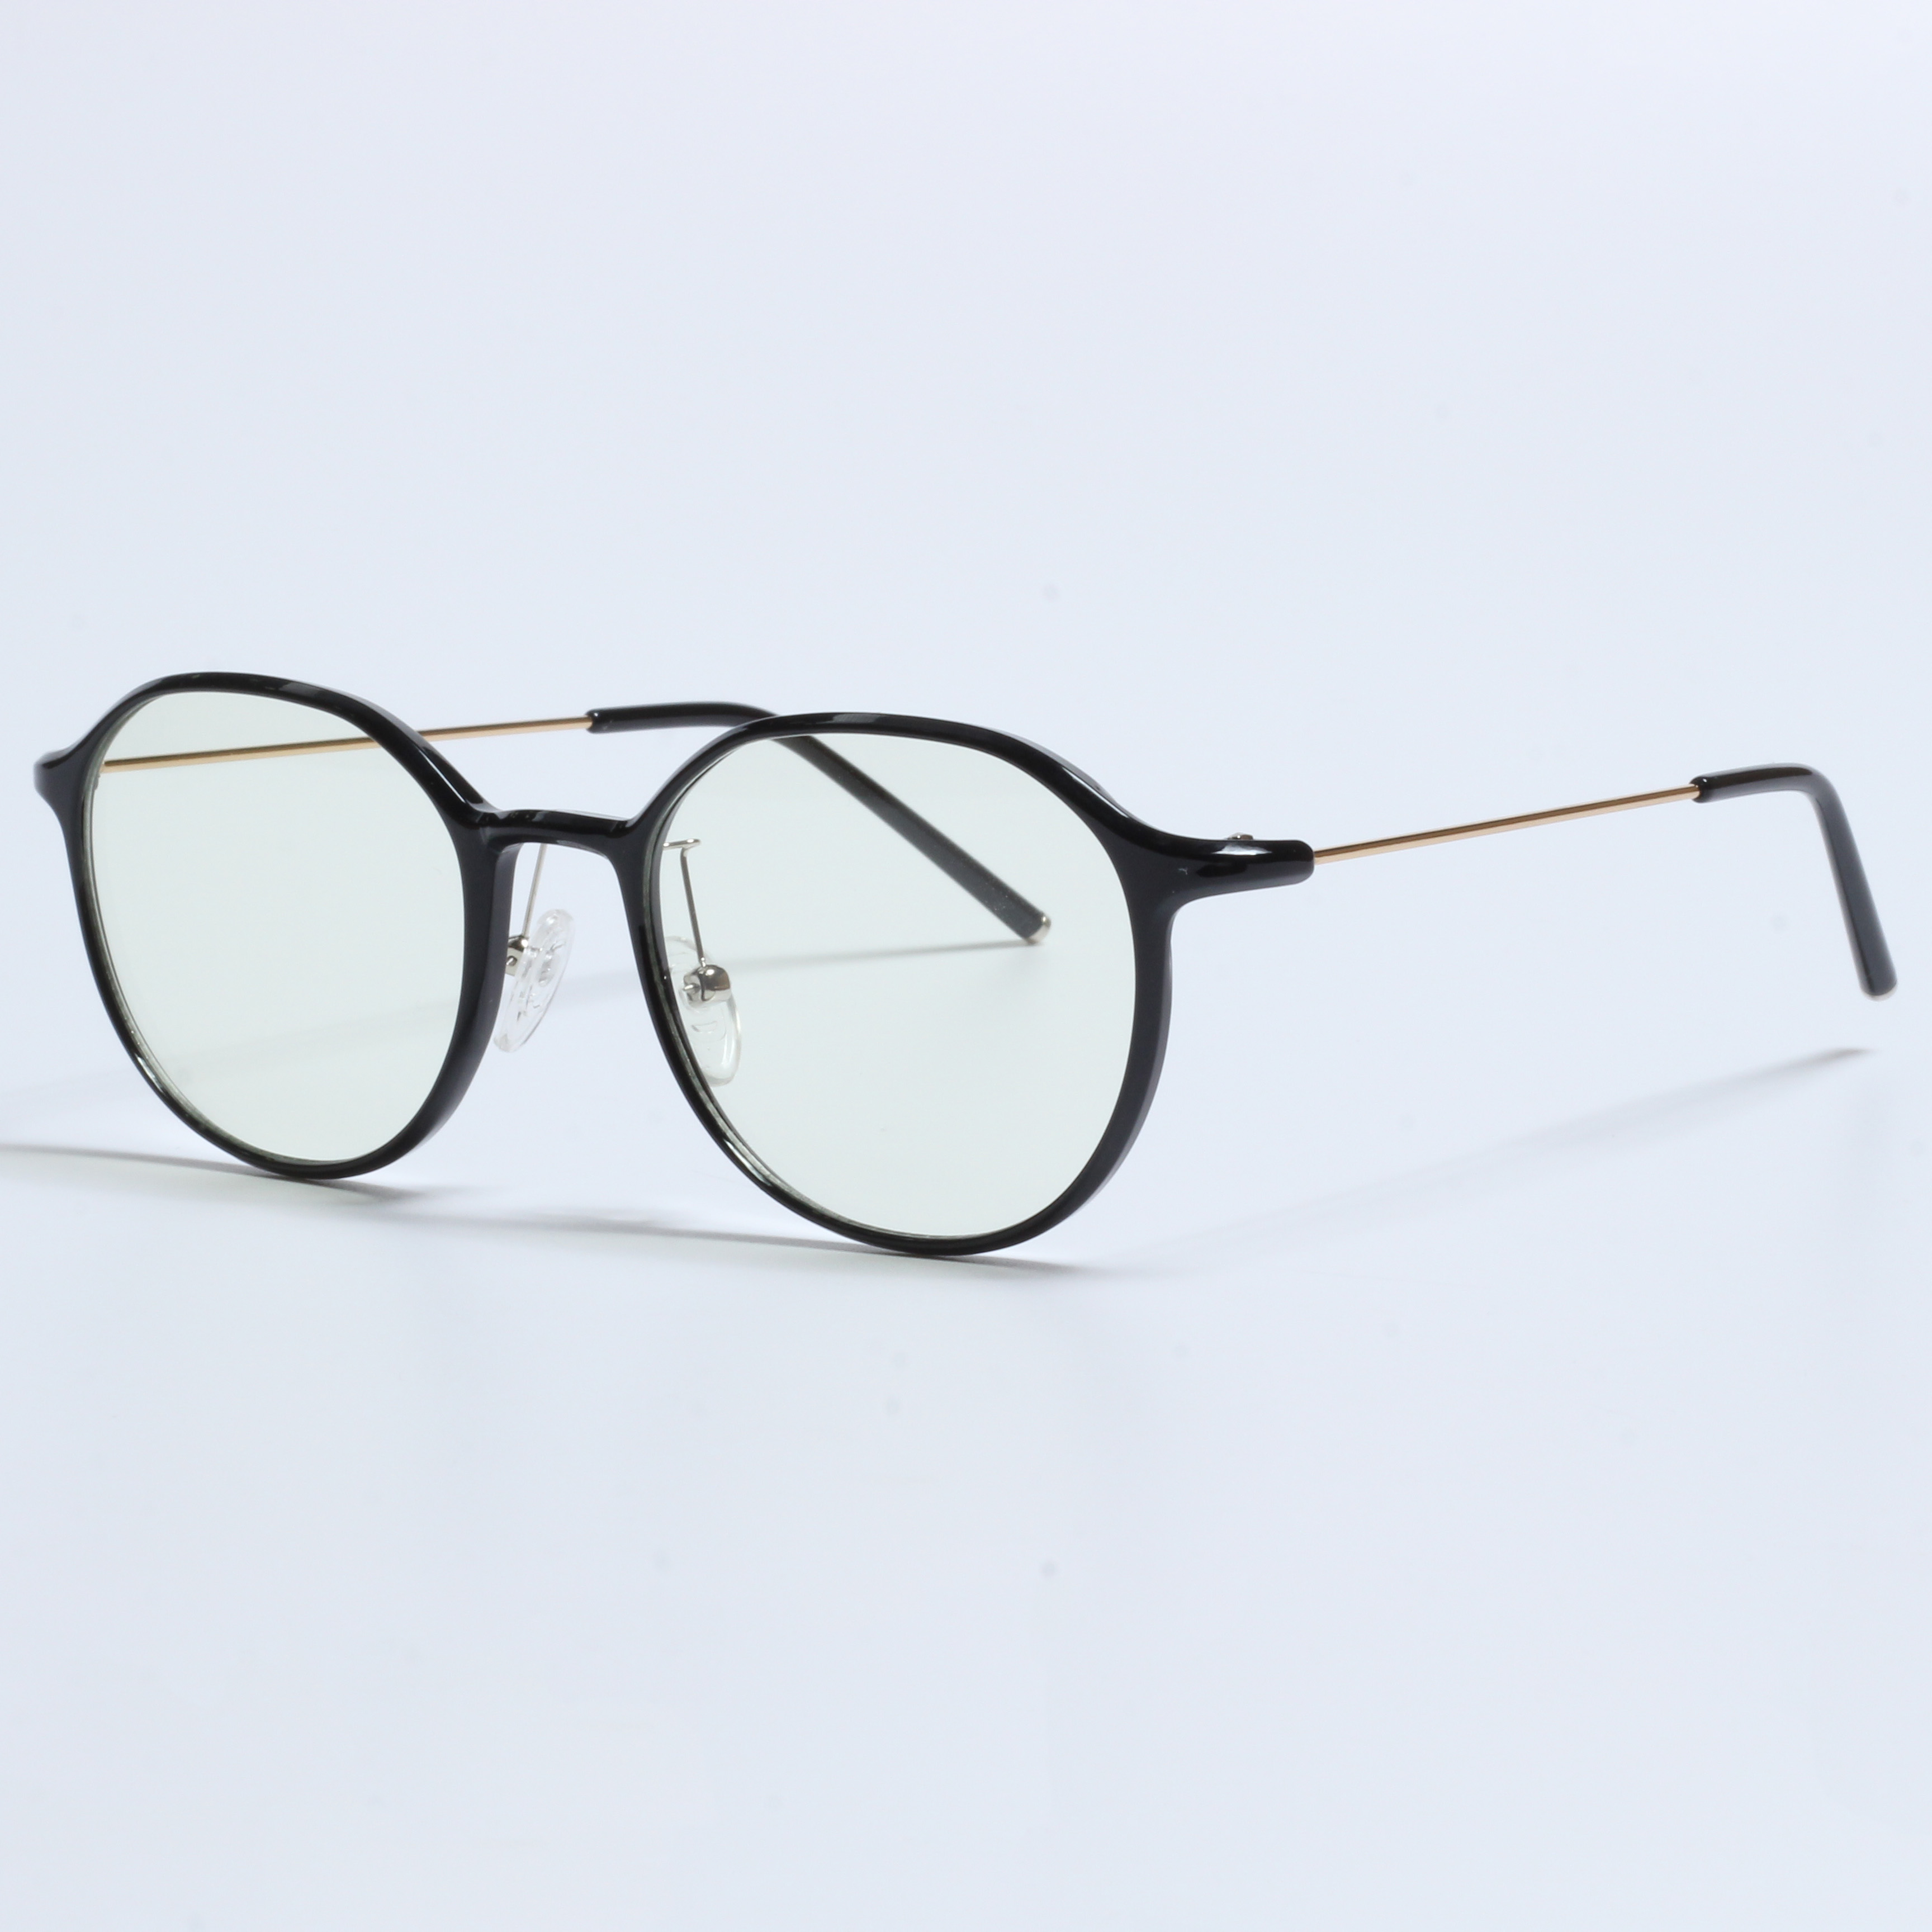 Vintage Thick Gafas Opticas De Hombres Transparent TR90 Frames (2)